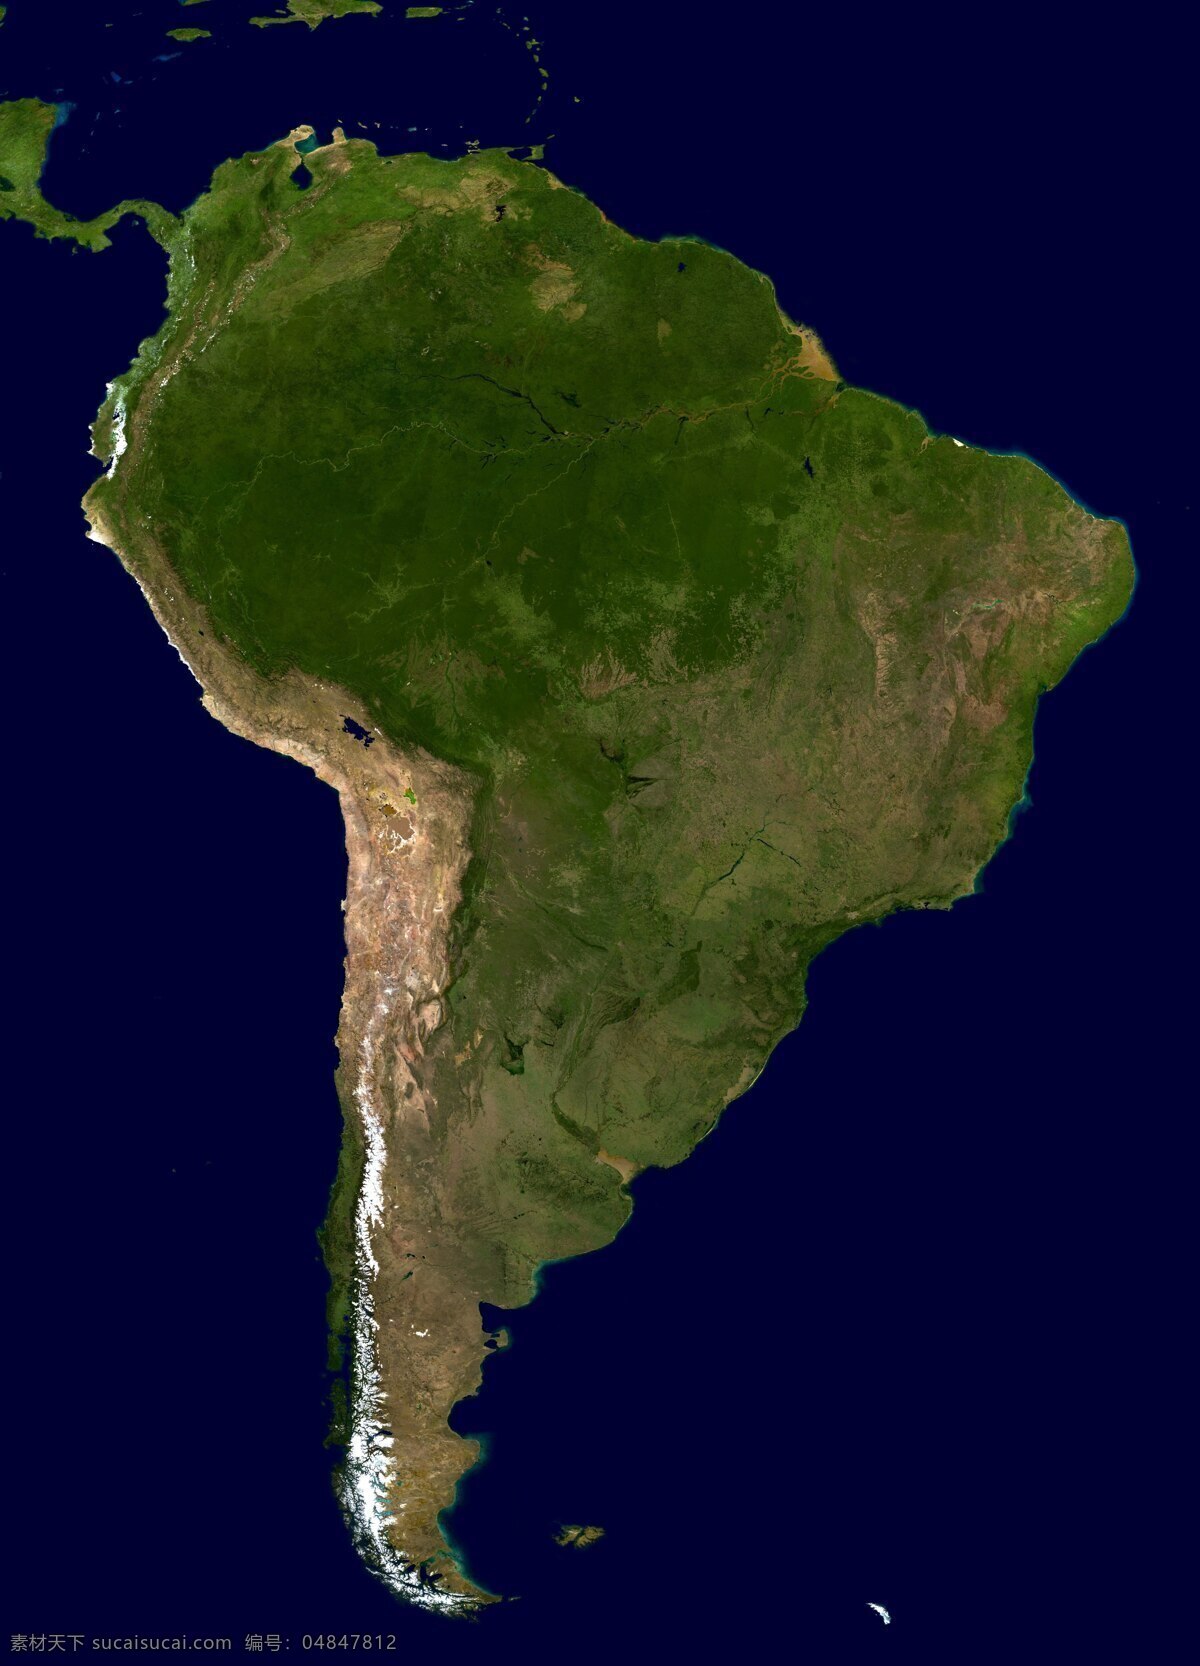 南美洲 卫星 图像 大陆 土地 地图 鸟瞰图 卫星图像 卫星照片 美国